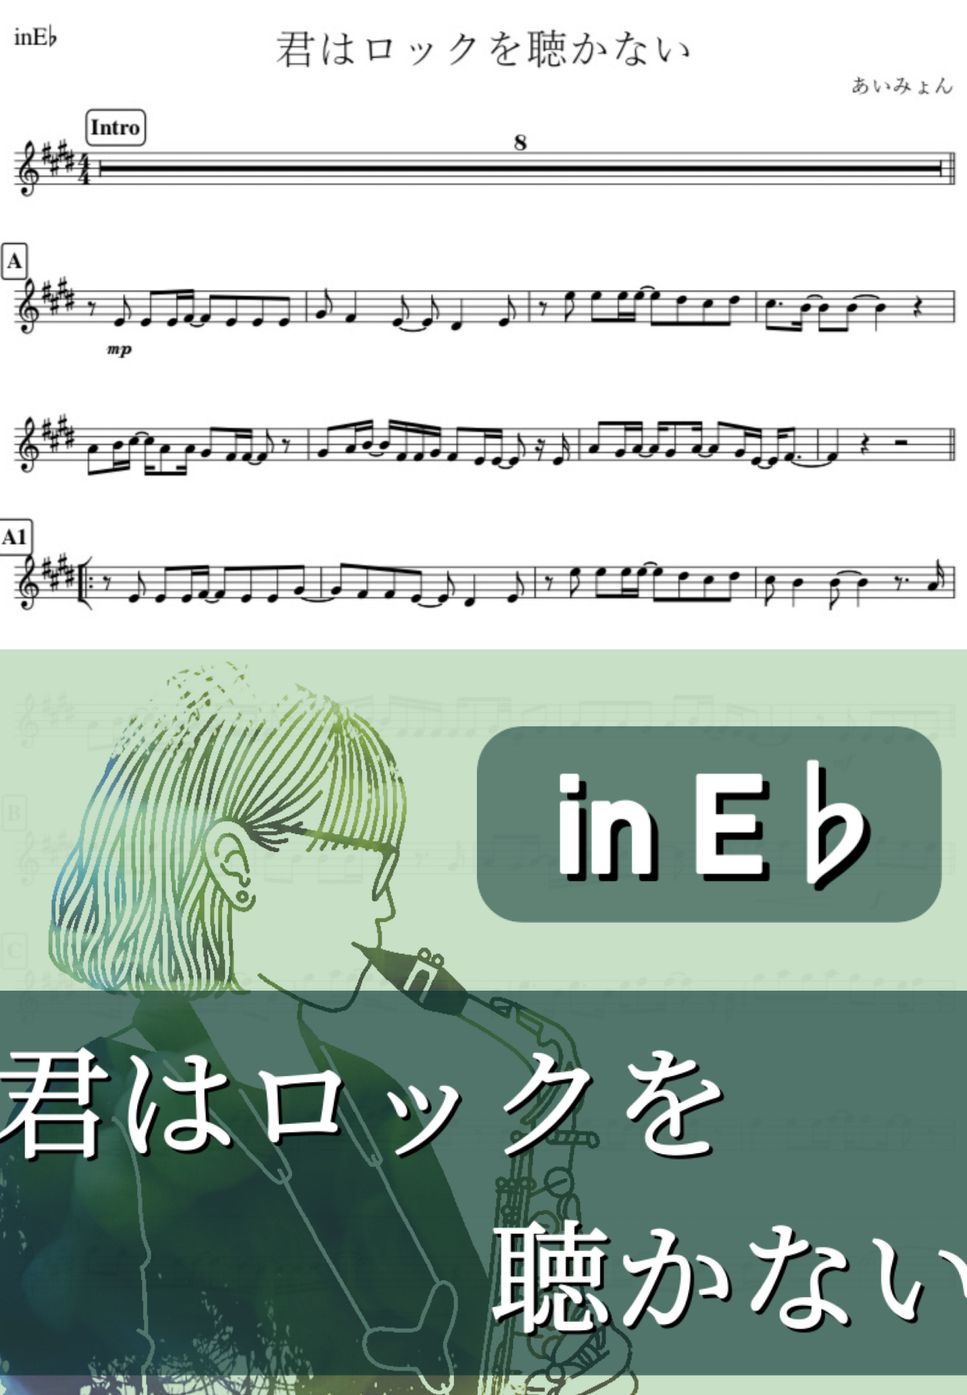 あいみょん - 君はロックを聴かない (E♭) by kanamusic